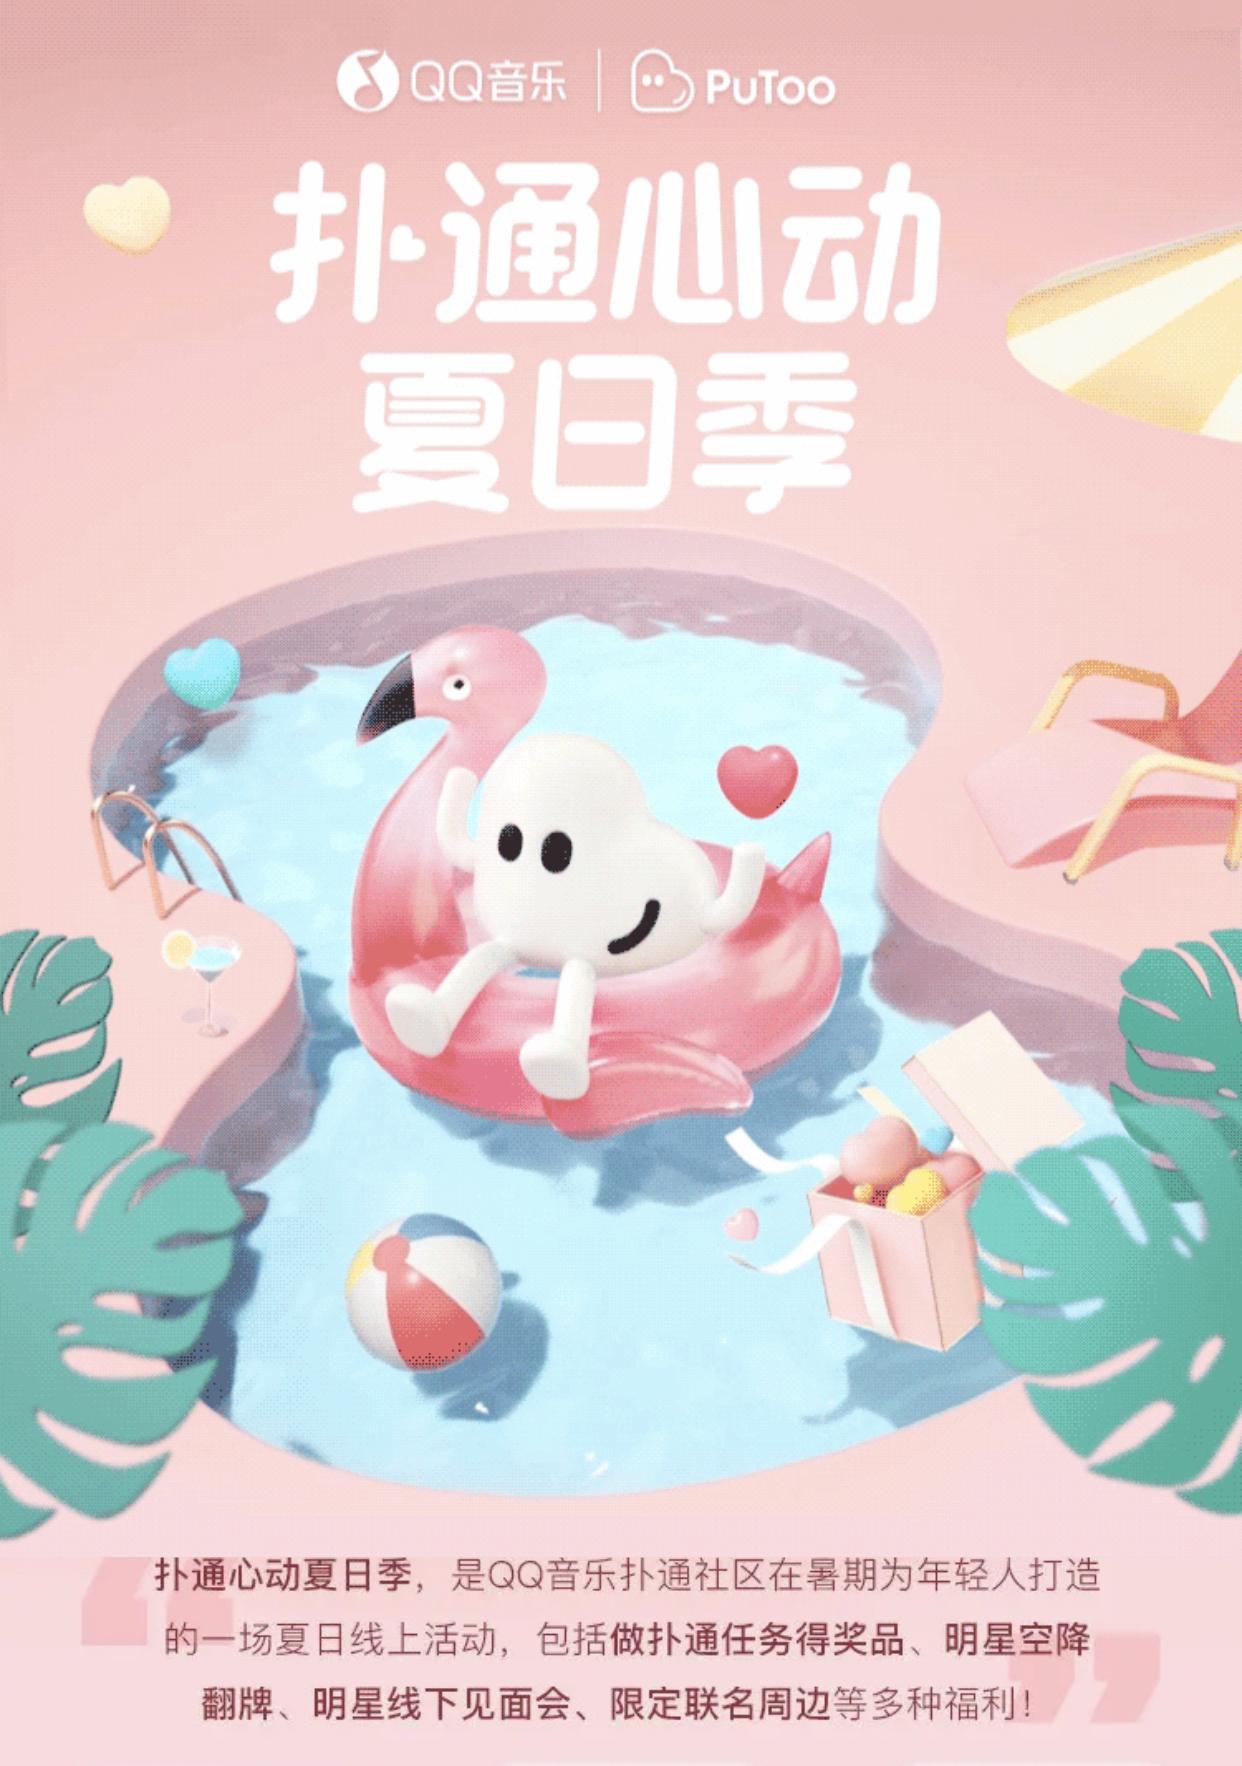 QQ音乐暑假“搞事”，携利路修、俞更寅开启“扑通心动夏日季”